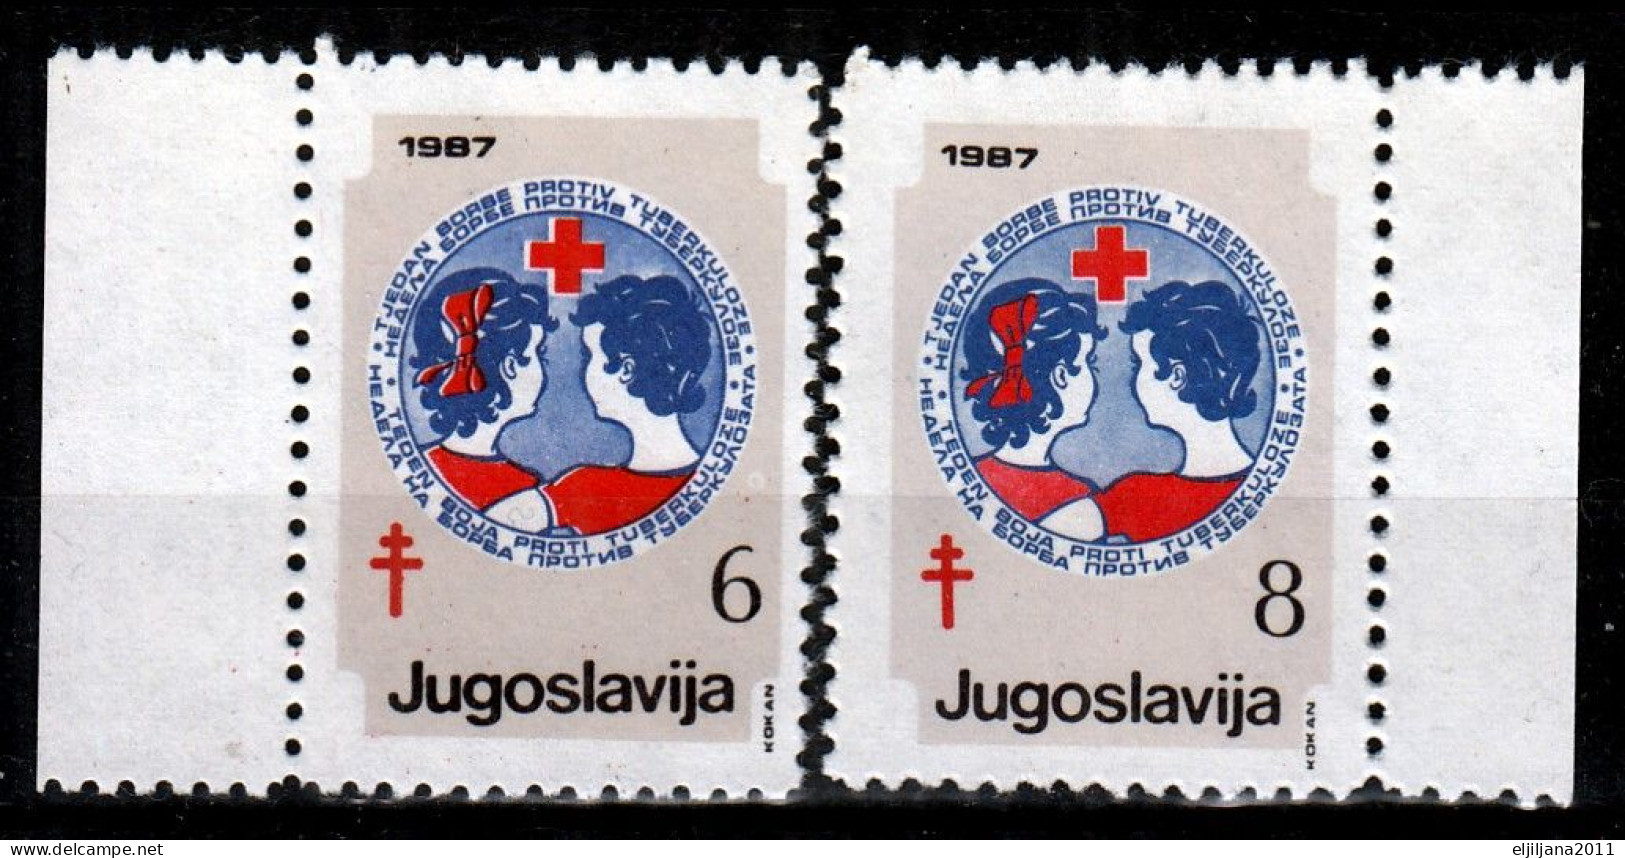 ⁕ Yugoslavia 1987 ⁕ Red Cross / Fight Against Tuberculosis 6 & 8 Din. Mi.126, 128 ⁕ 2v Unused - Liefdadigheid